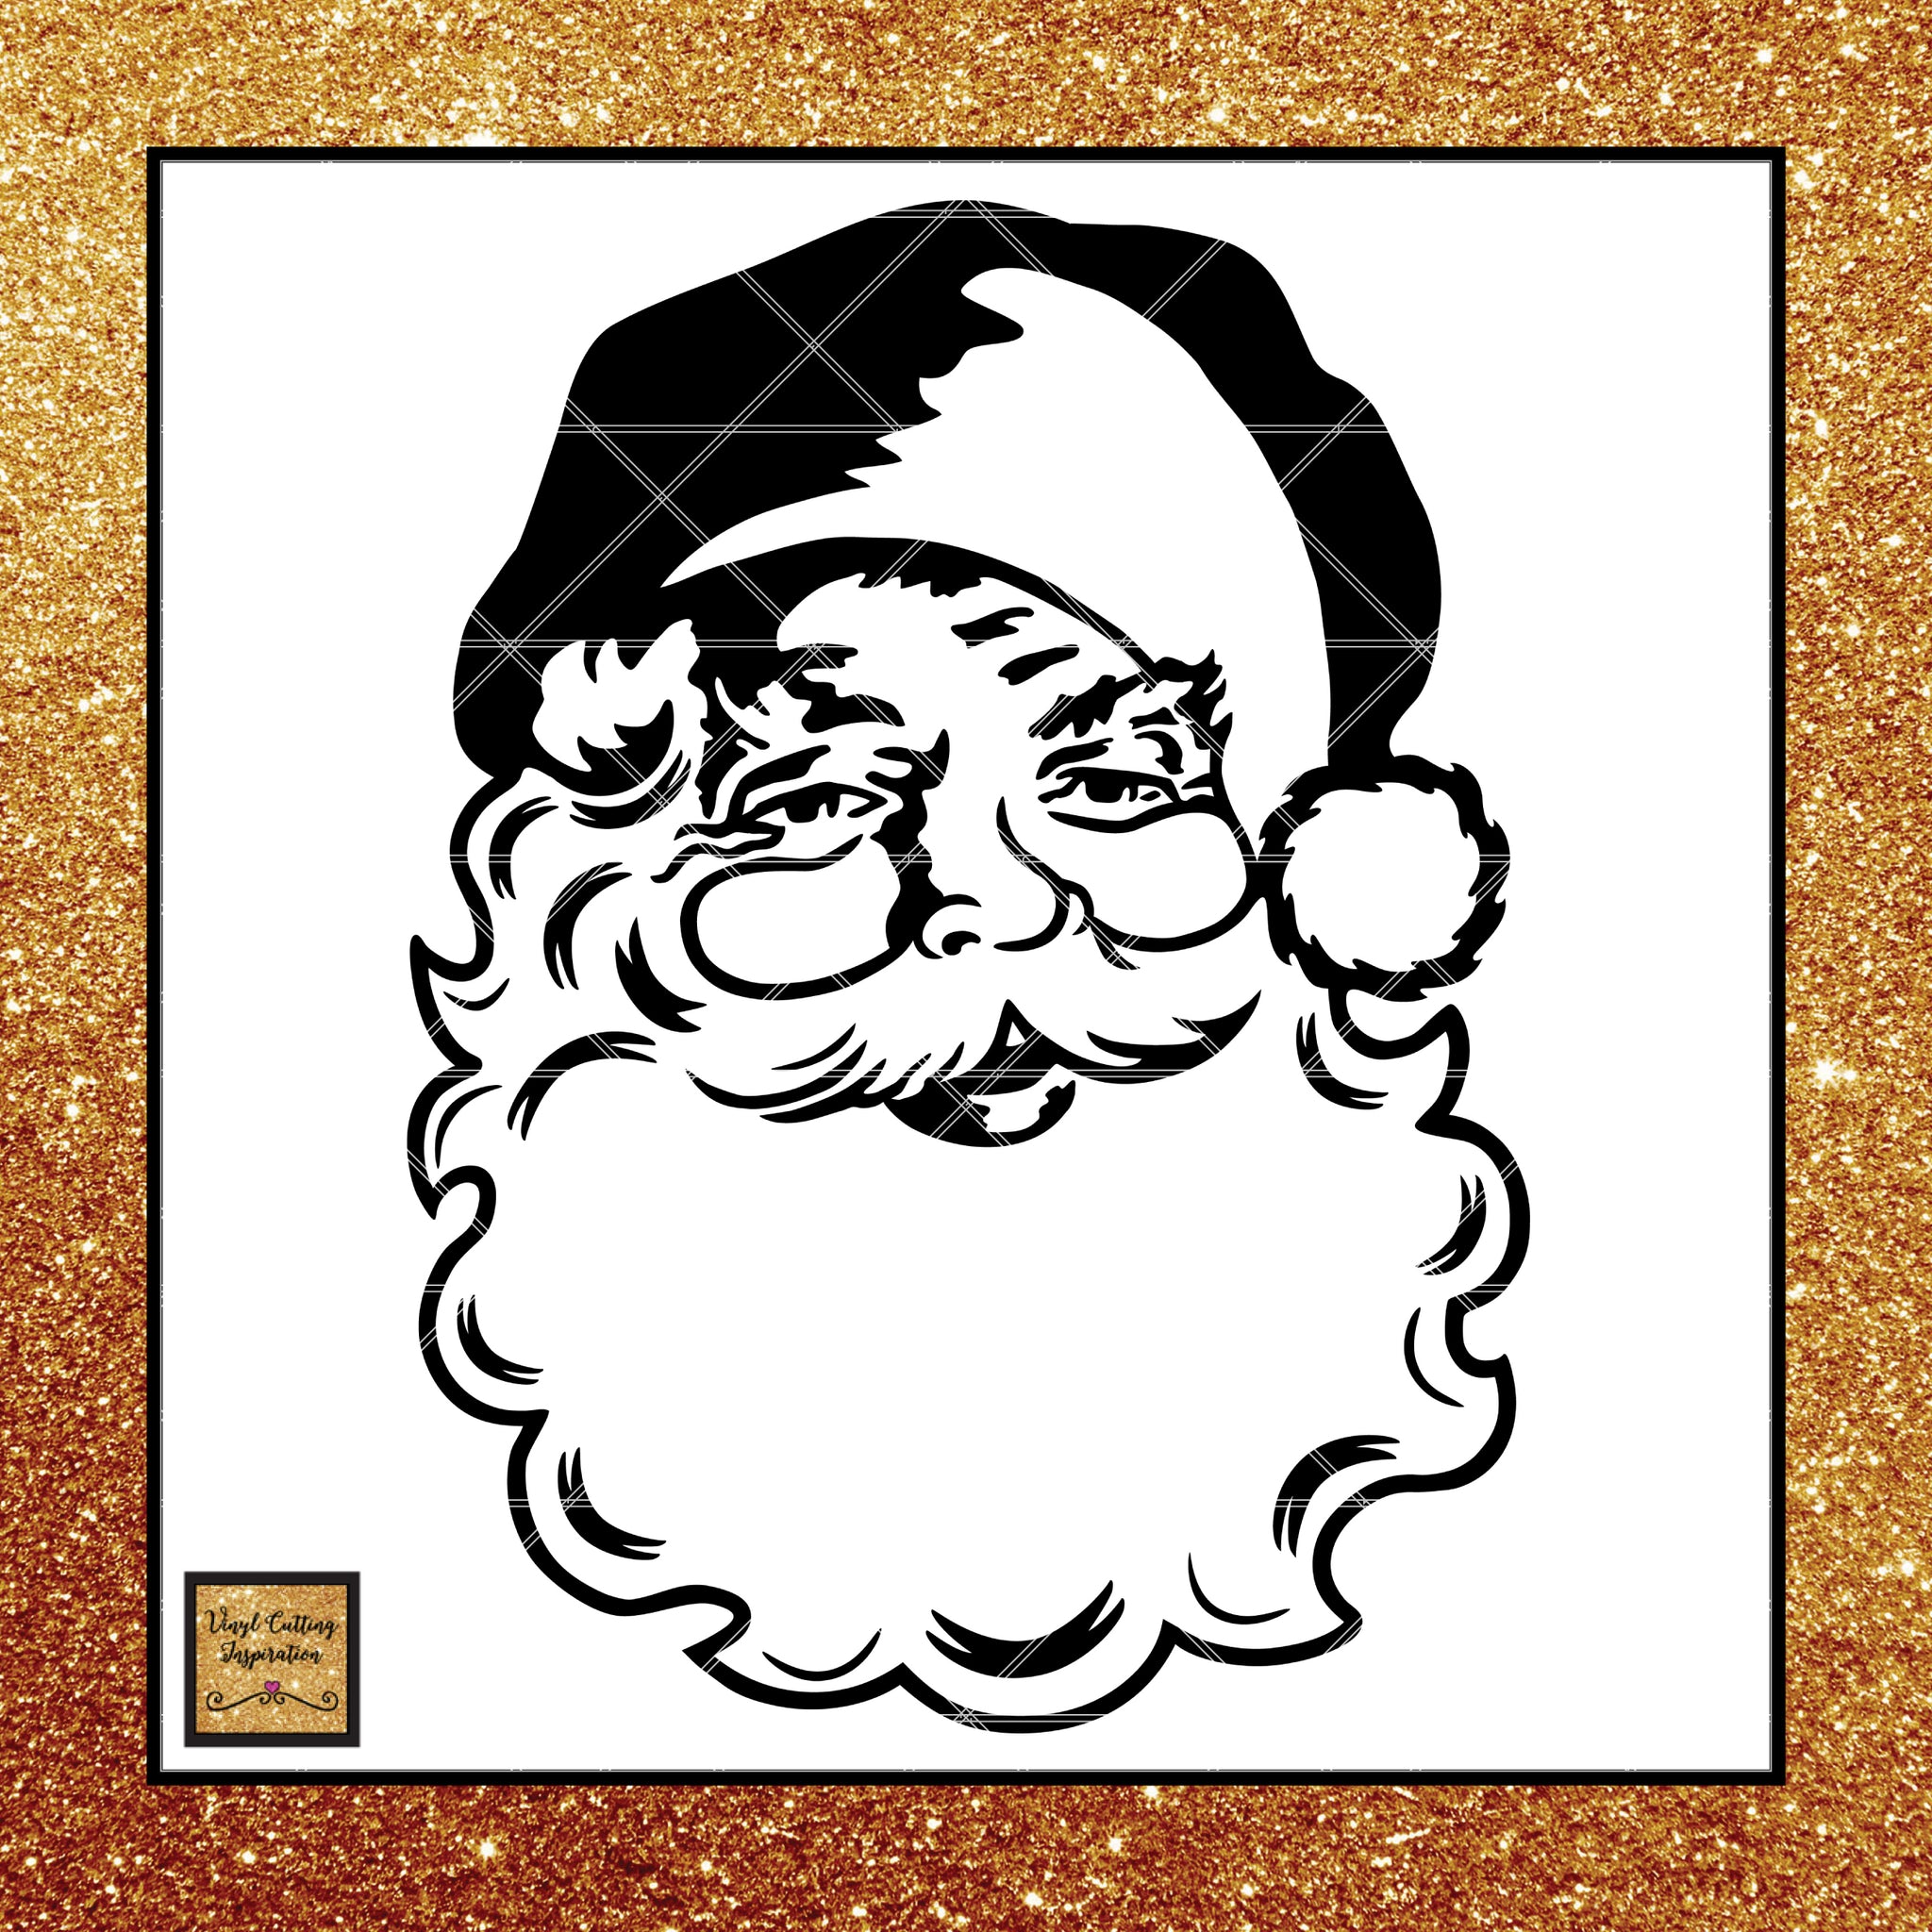 Download Vintage Santa Svg, Santa Svg, Santa Face Svg, Santa Claus Svg, Christm - Vinyl Cutting Inspiration